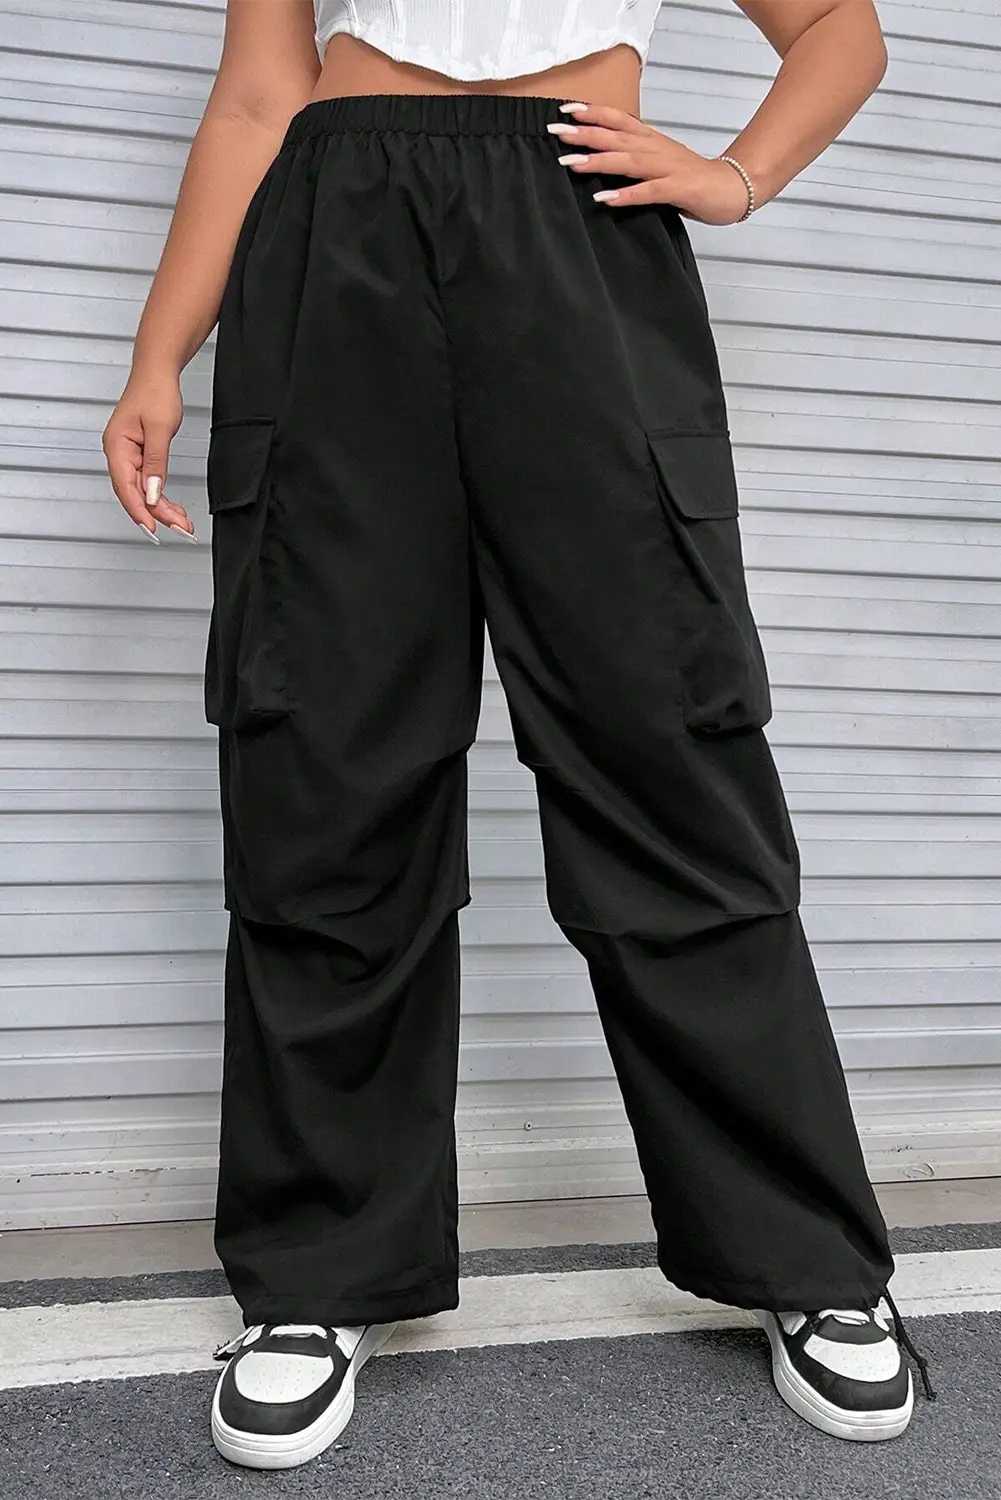 Black plus size flap pocket elastic waist cargo pants - 1x